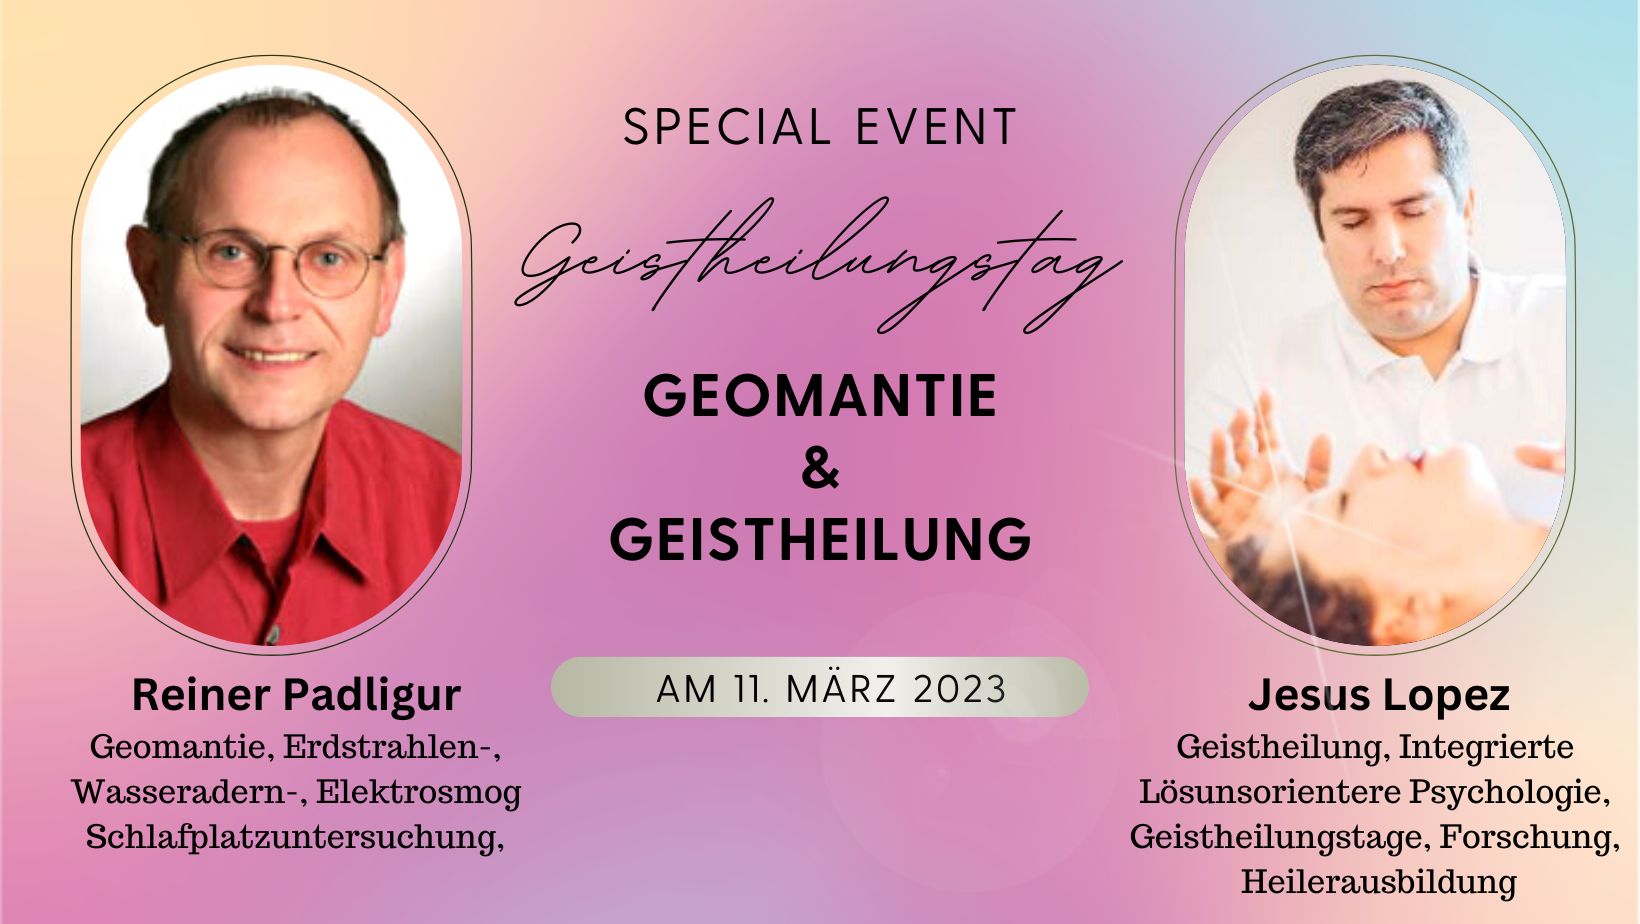 Veranstaltung am 11. März 2023 in Bergheim.